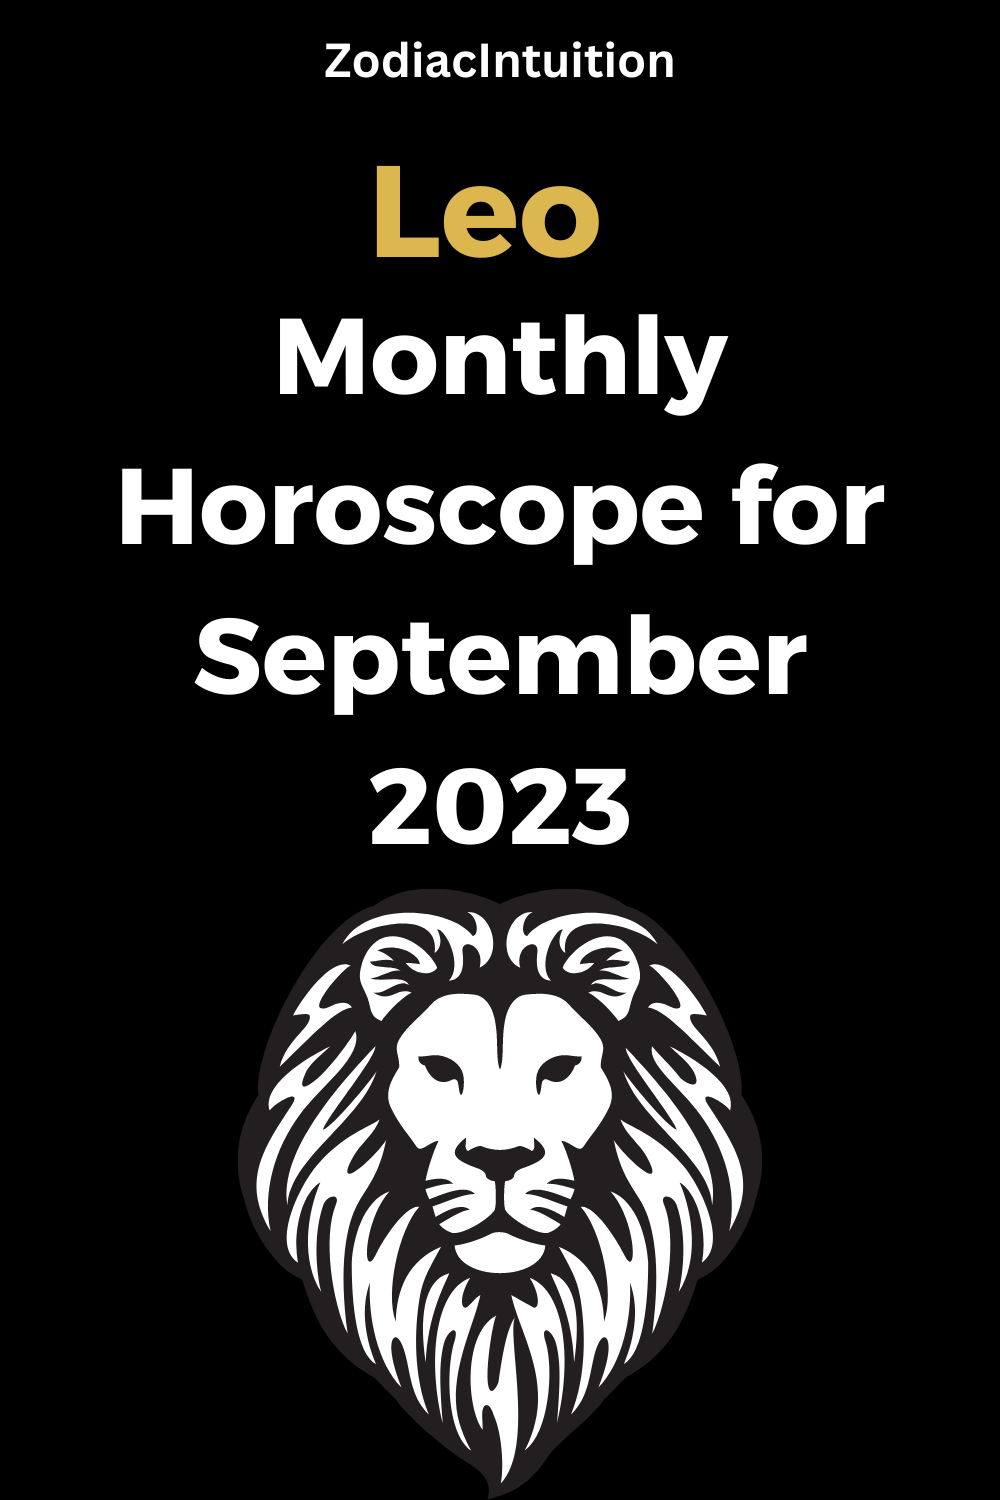 Leo Monthly Horoscope for September 2023